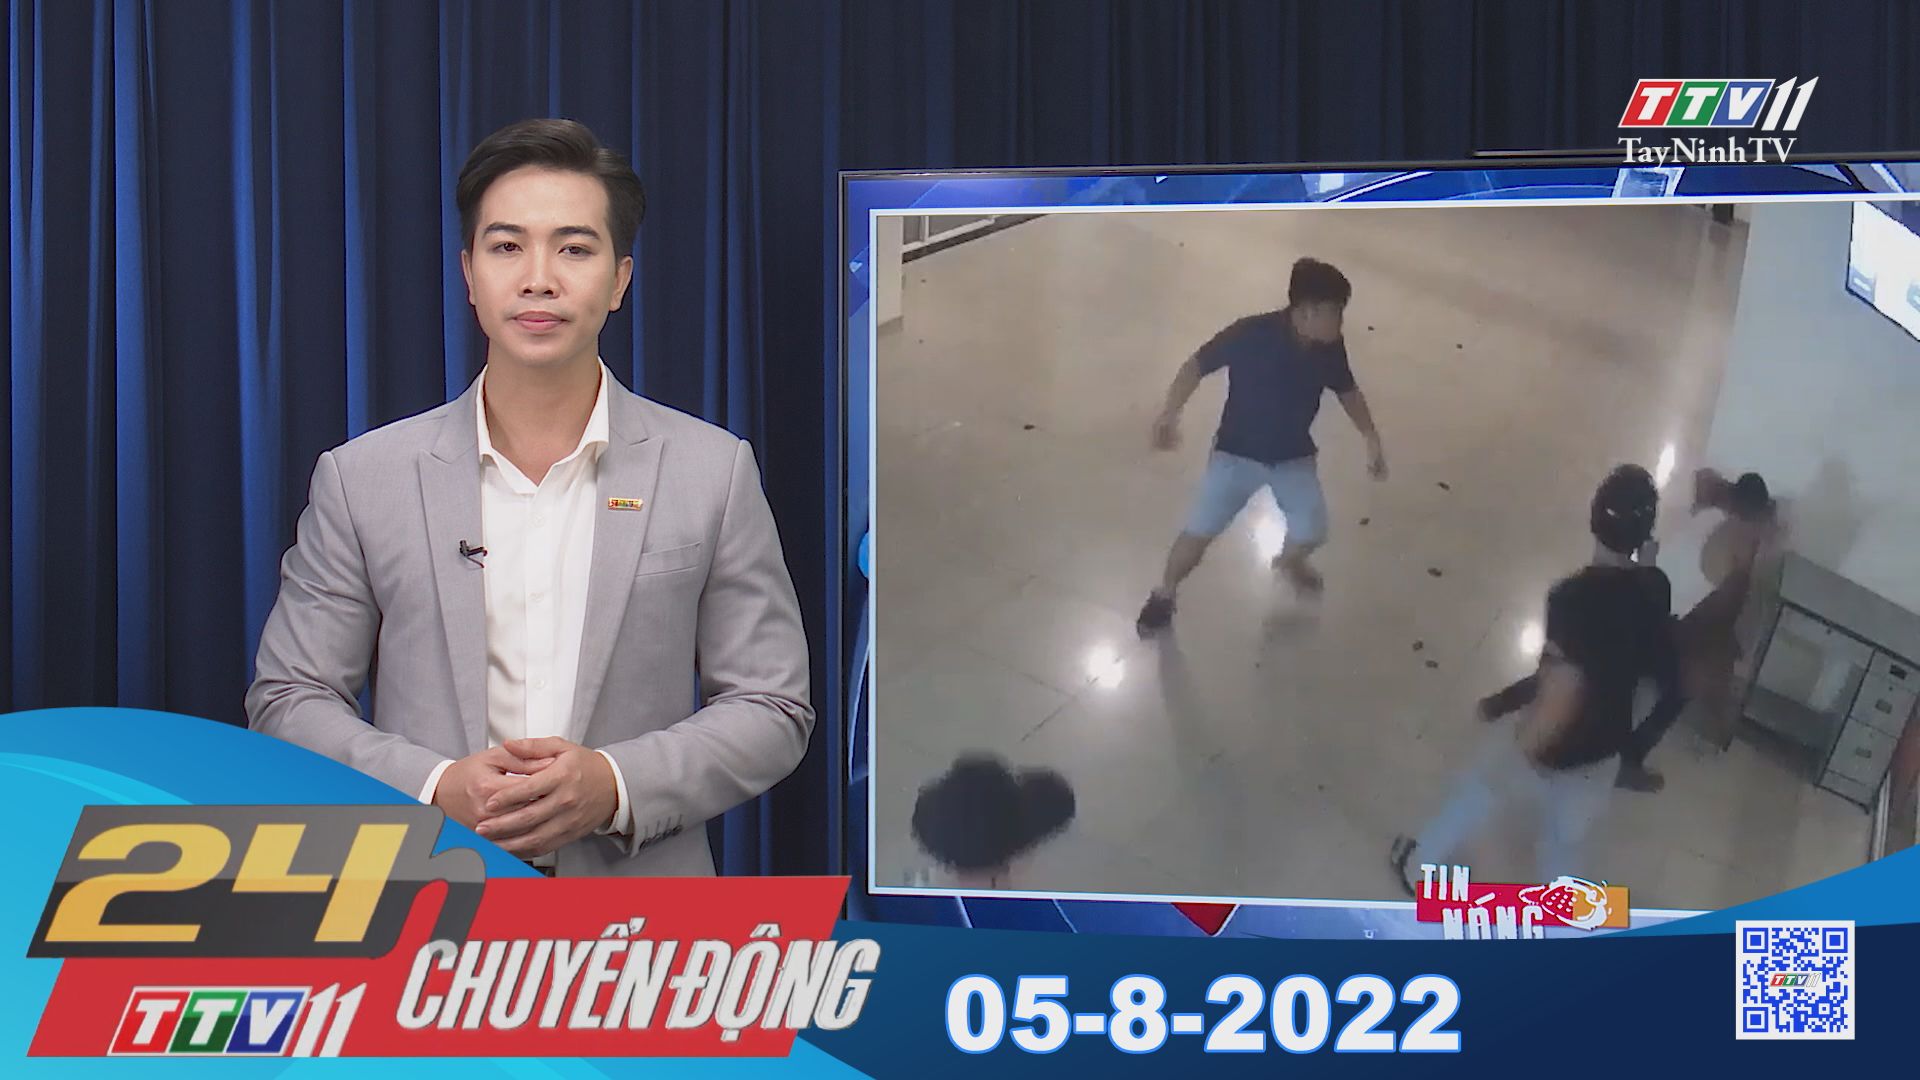 24h Chuyển động 05-8-2022 | Tin tức hôm nay | TayNinhTV